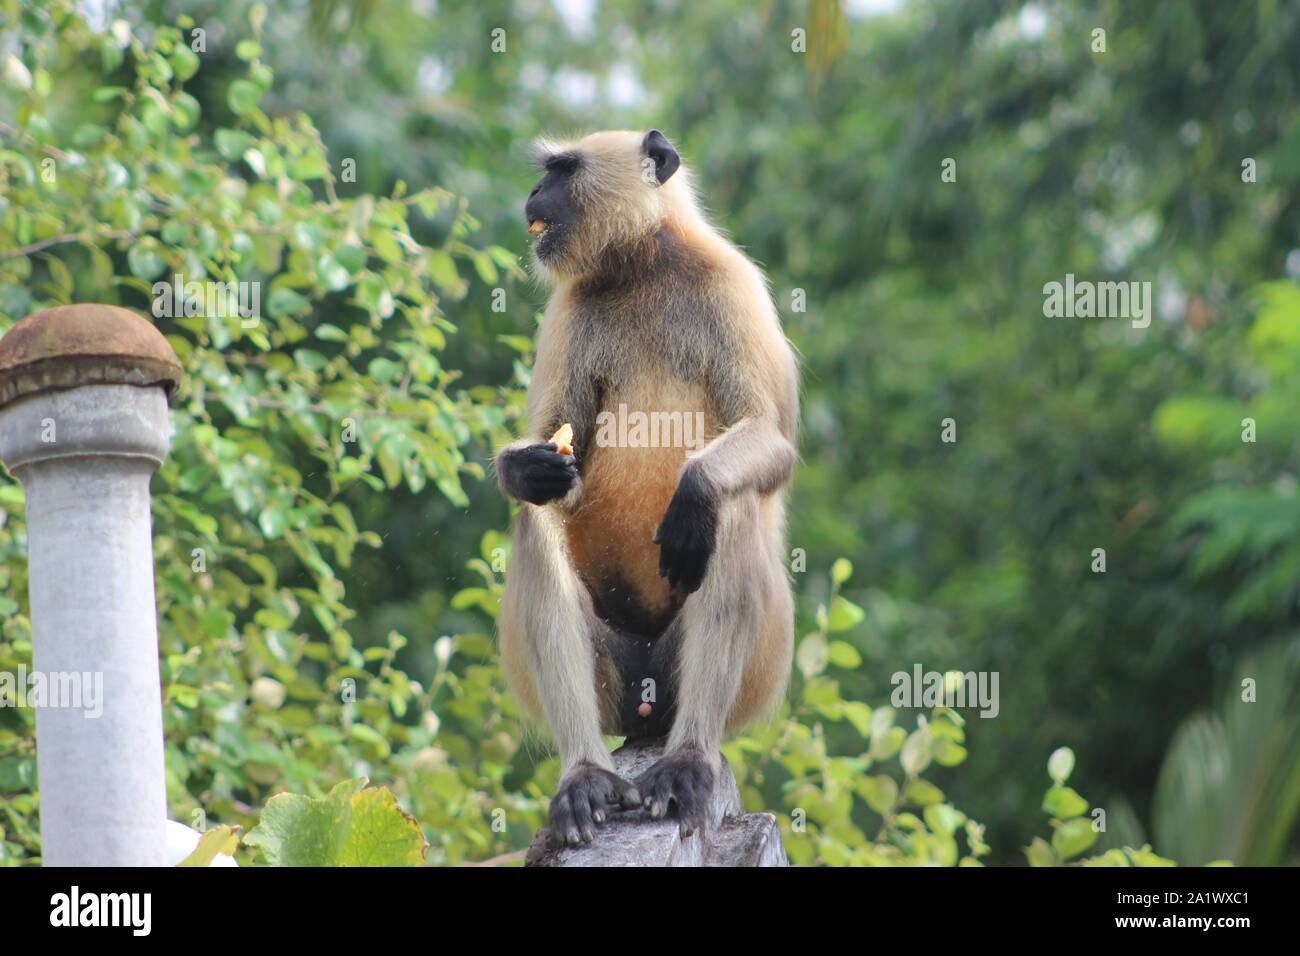 Bangladeshi animal monkey Stock Photo